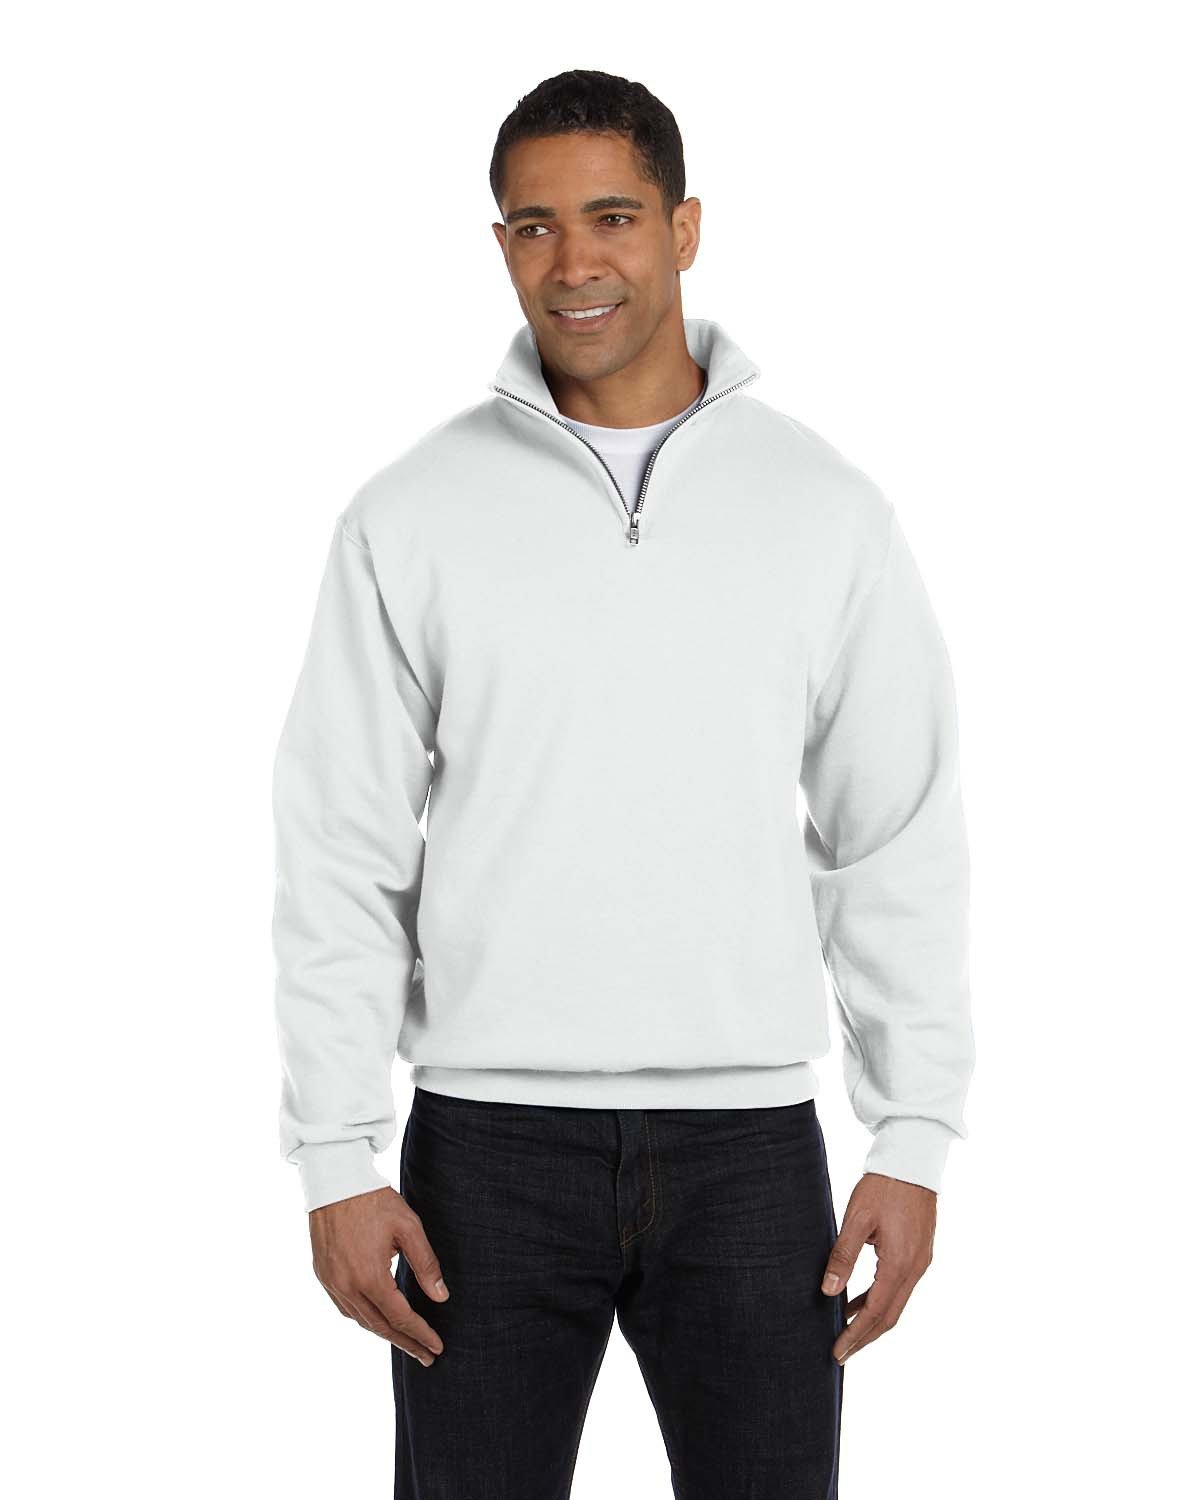 Front view of Adult NuBlend® Quarter-Zip Cadet Collar Sweatshirt